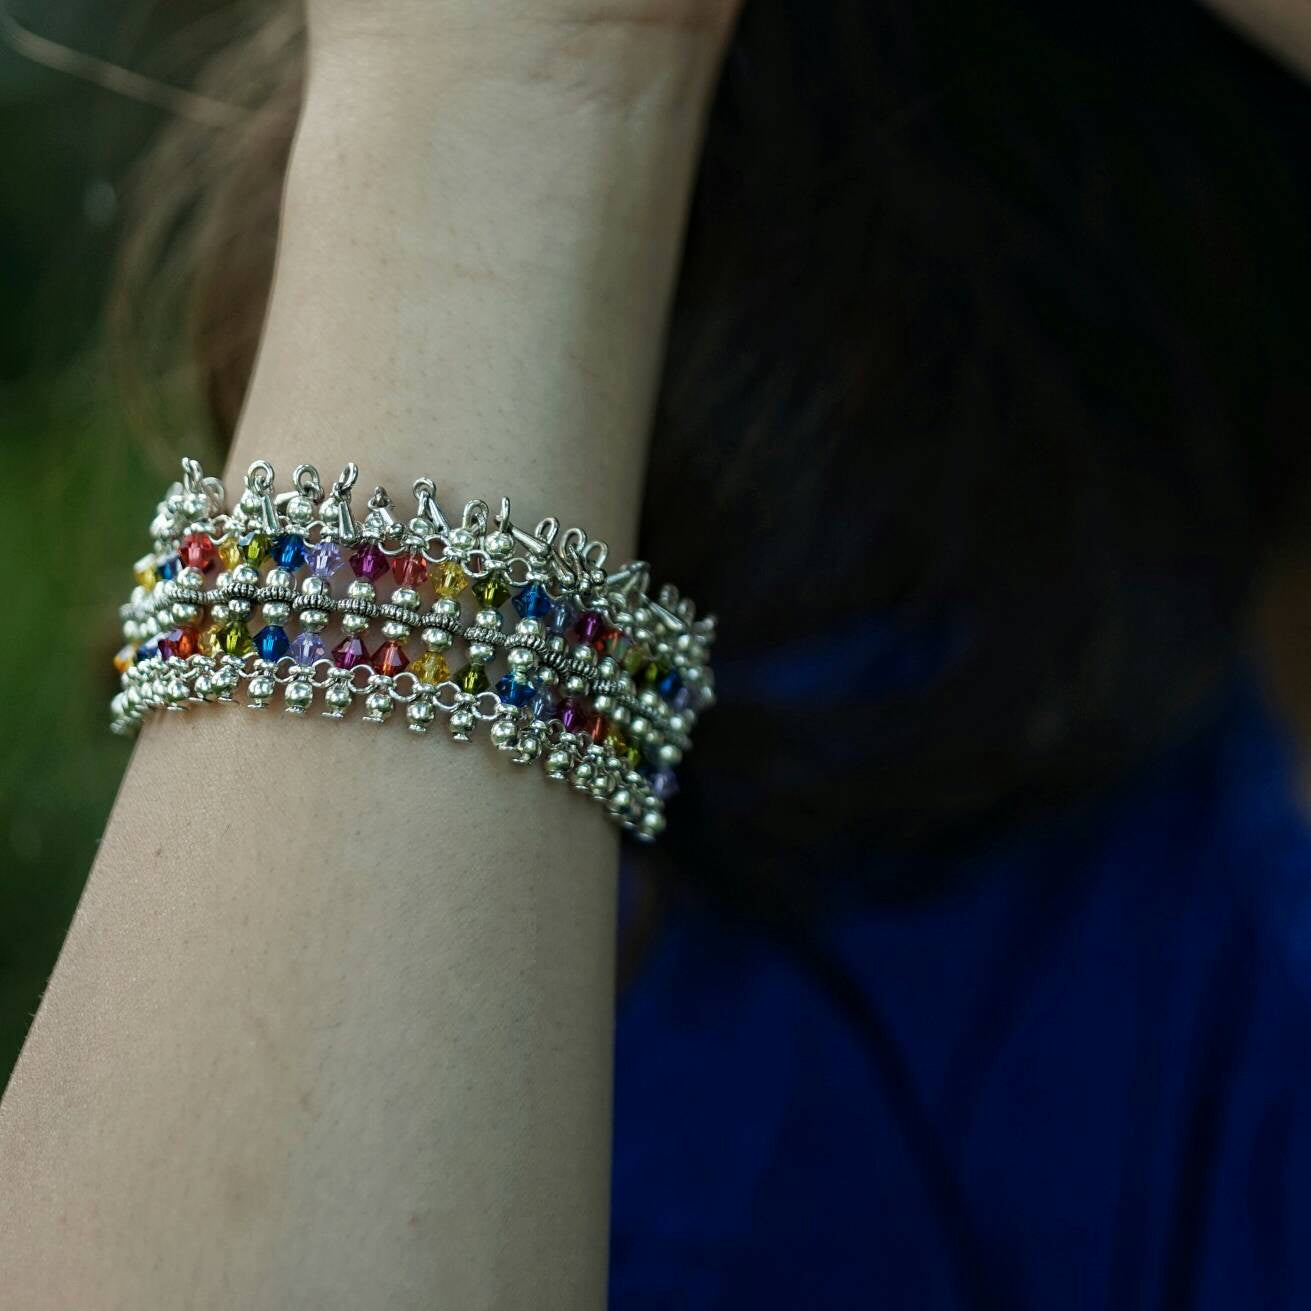 Rainbow Crystal Bracelet LGBTQ Pride Jewelry Fantasy Jewelry - DRAVYNMOOR